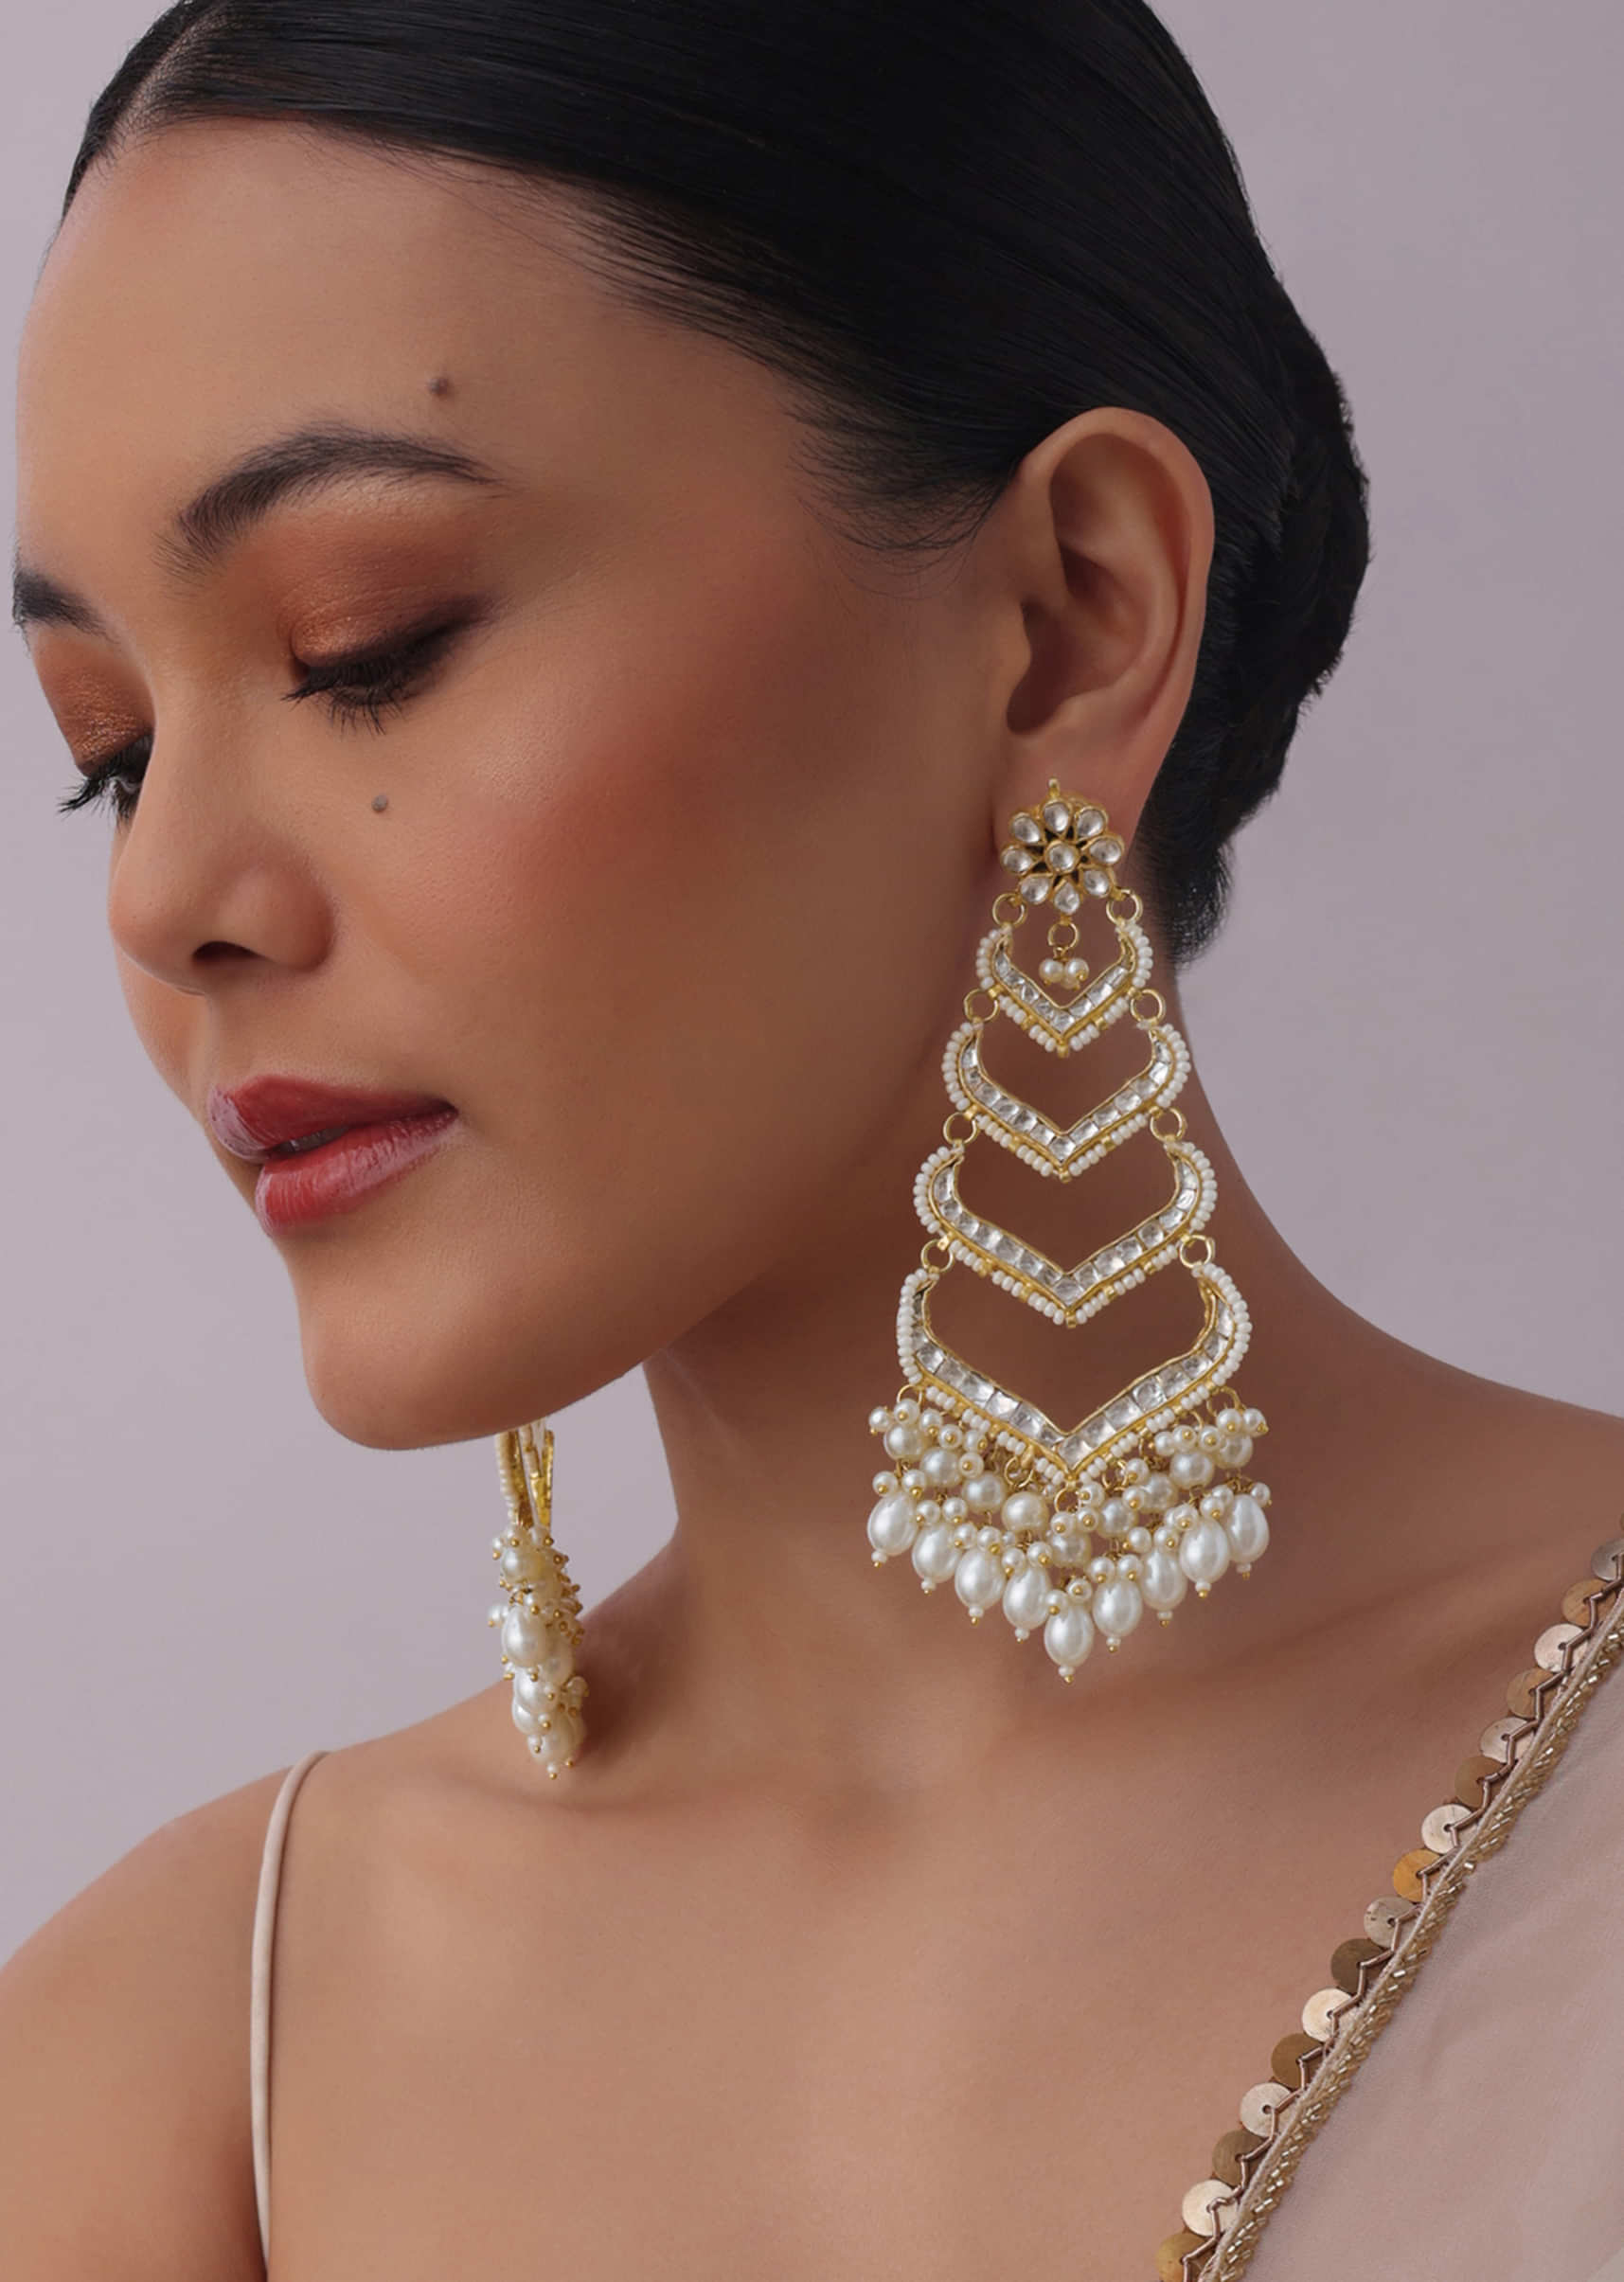 Earrings: Buy Earrings online at best prices in India - Amazon.in